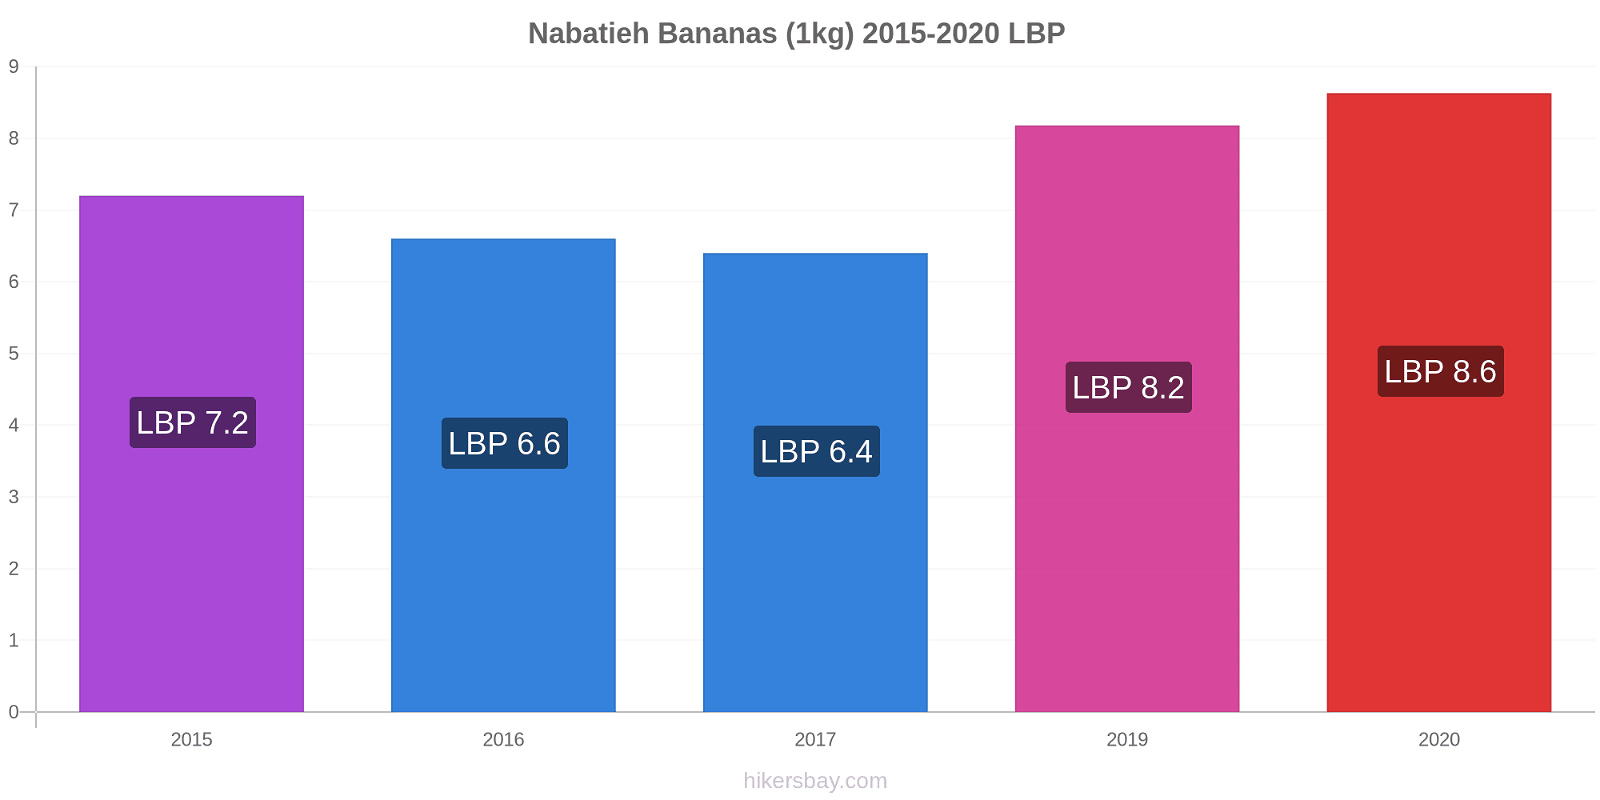 Nabatieh price changes Bananas (1kg) hikersbay.com